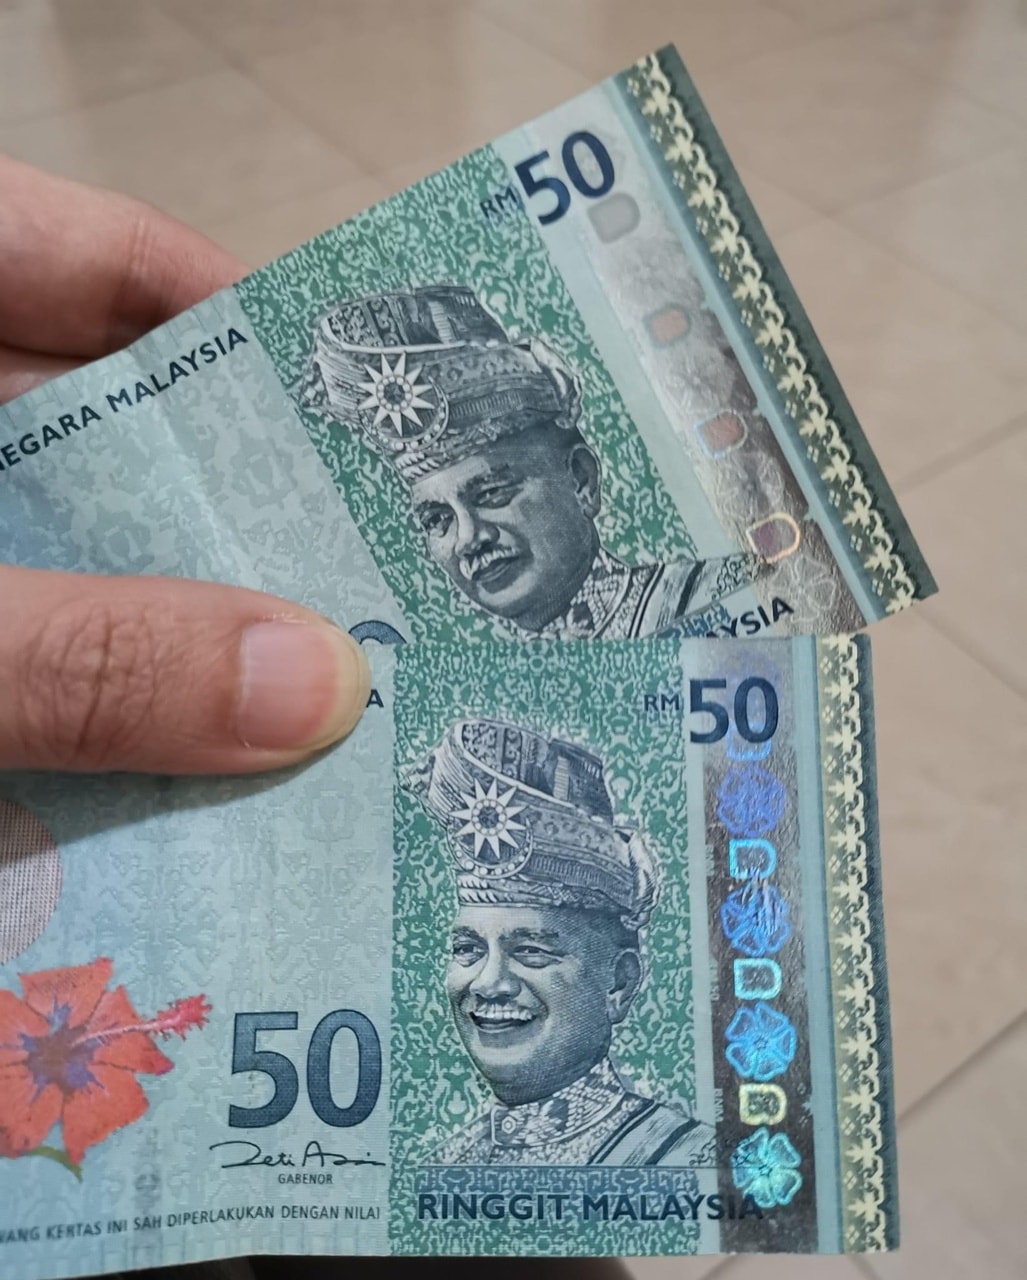 “阿公”笑了？网传市面RM50假钞 元首肖像微笑吓人